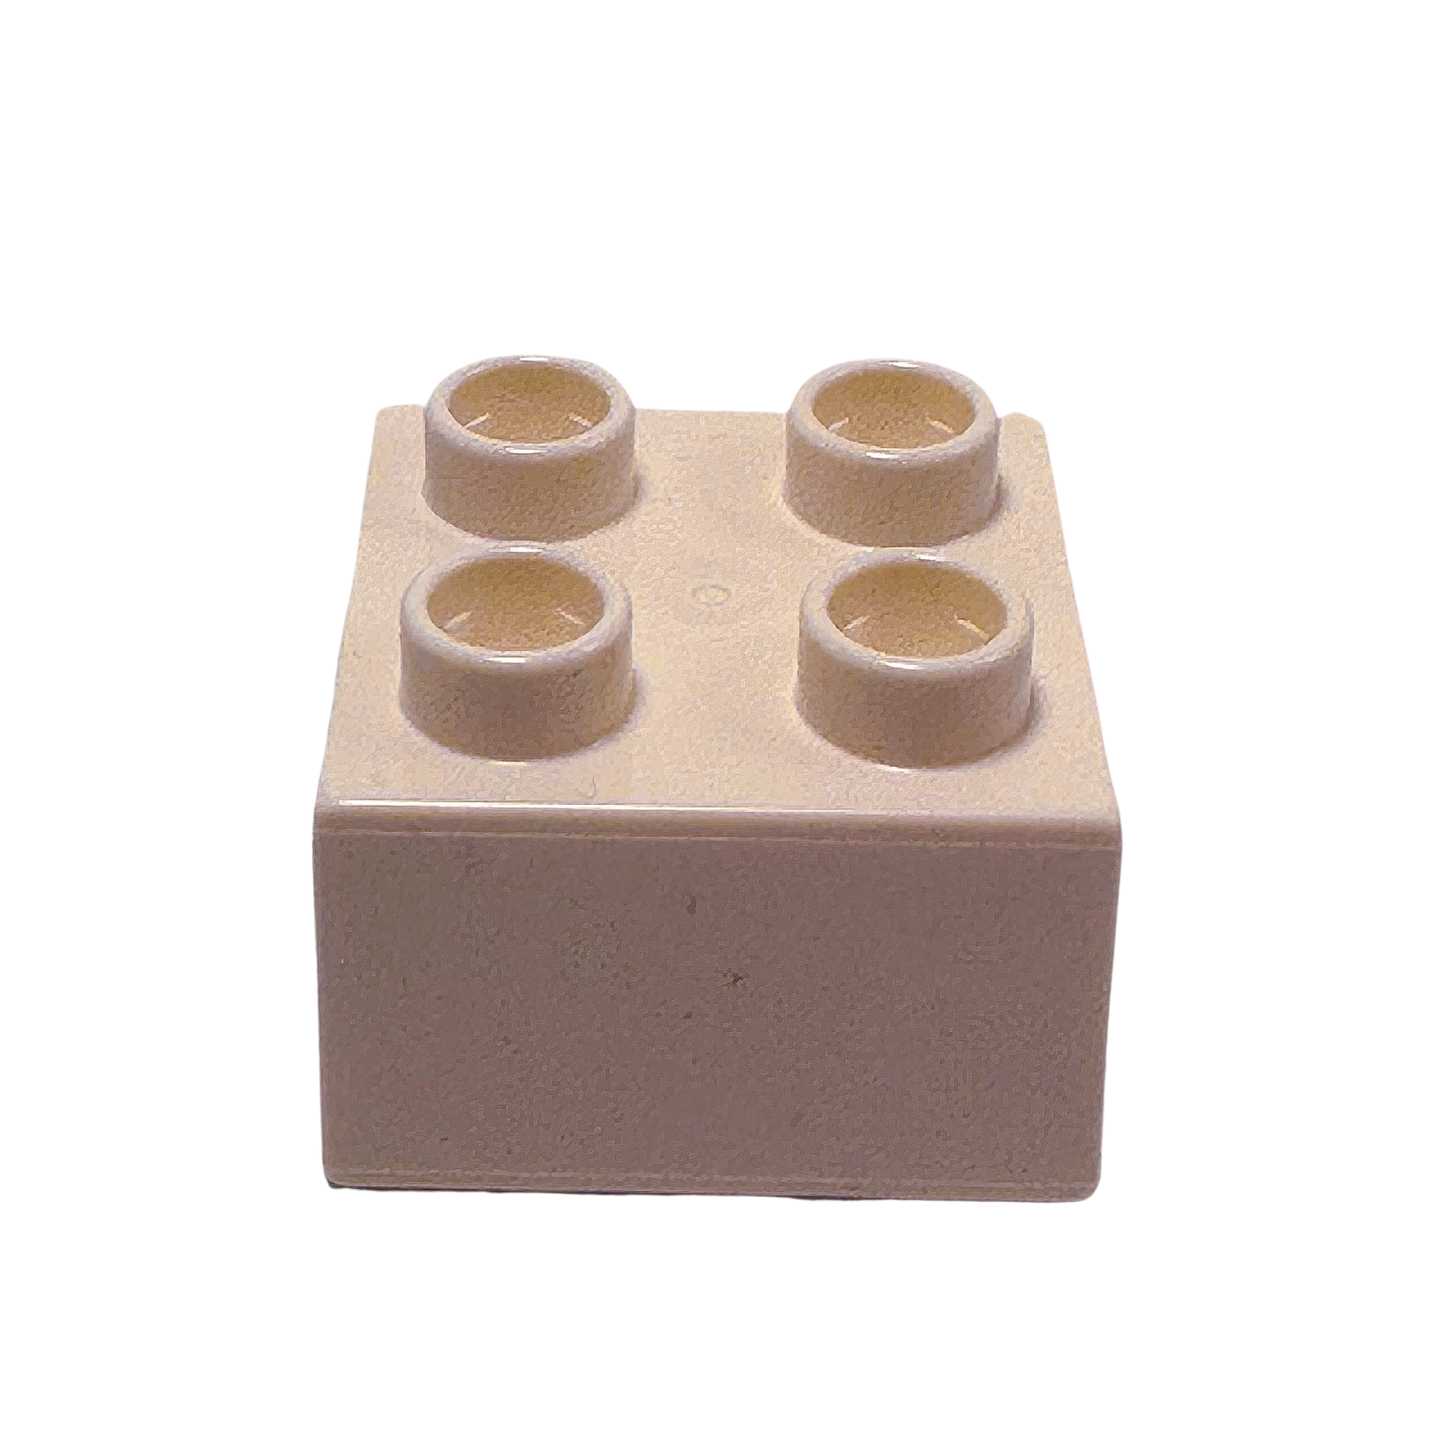 Klocki konstrukcyjne LEGO® DUPLO® 2x2 Basic białe - 3437 NOWOŚĆ!  Ilość: 10x